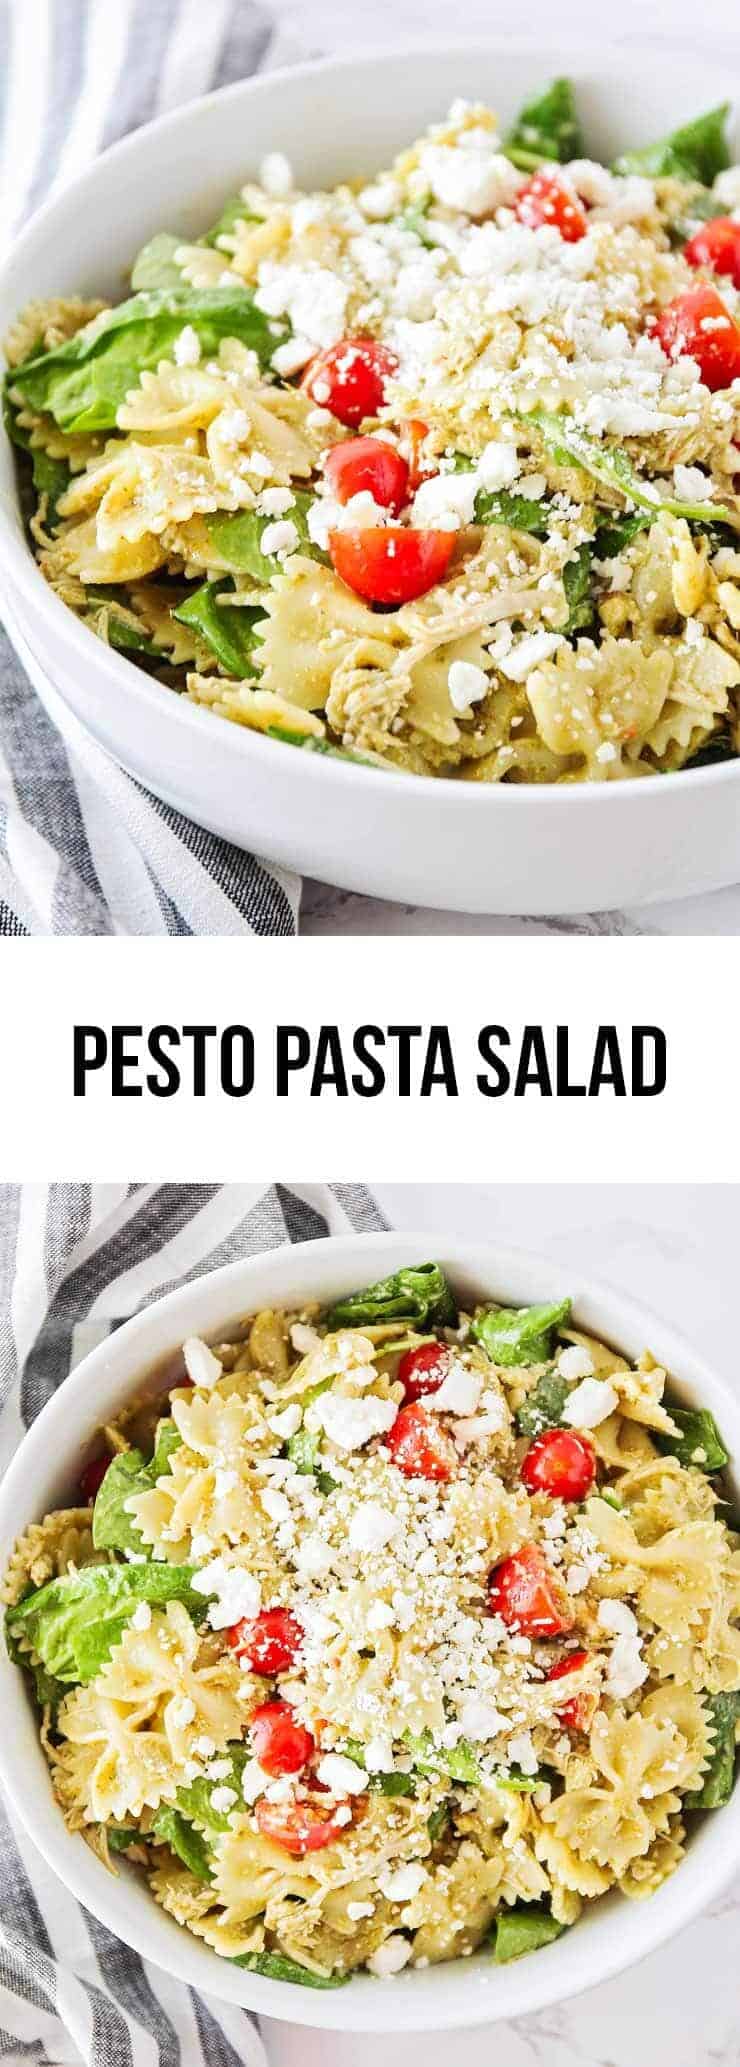 pesto pasta salad recipe